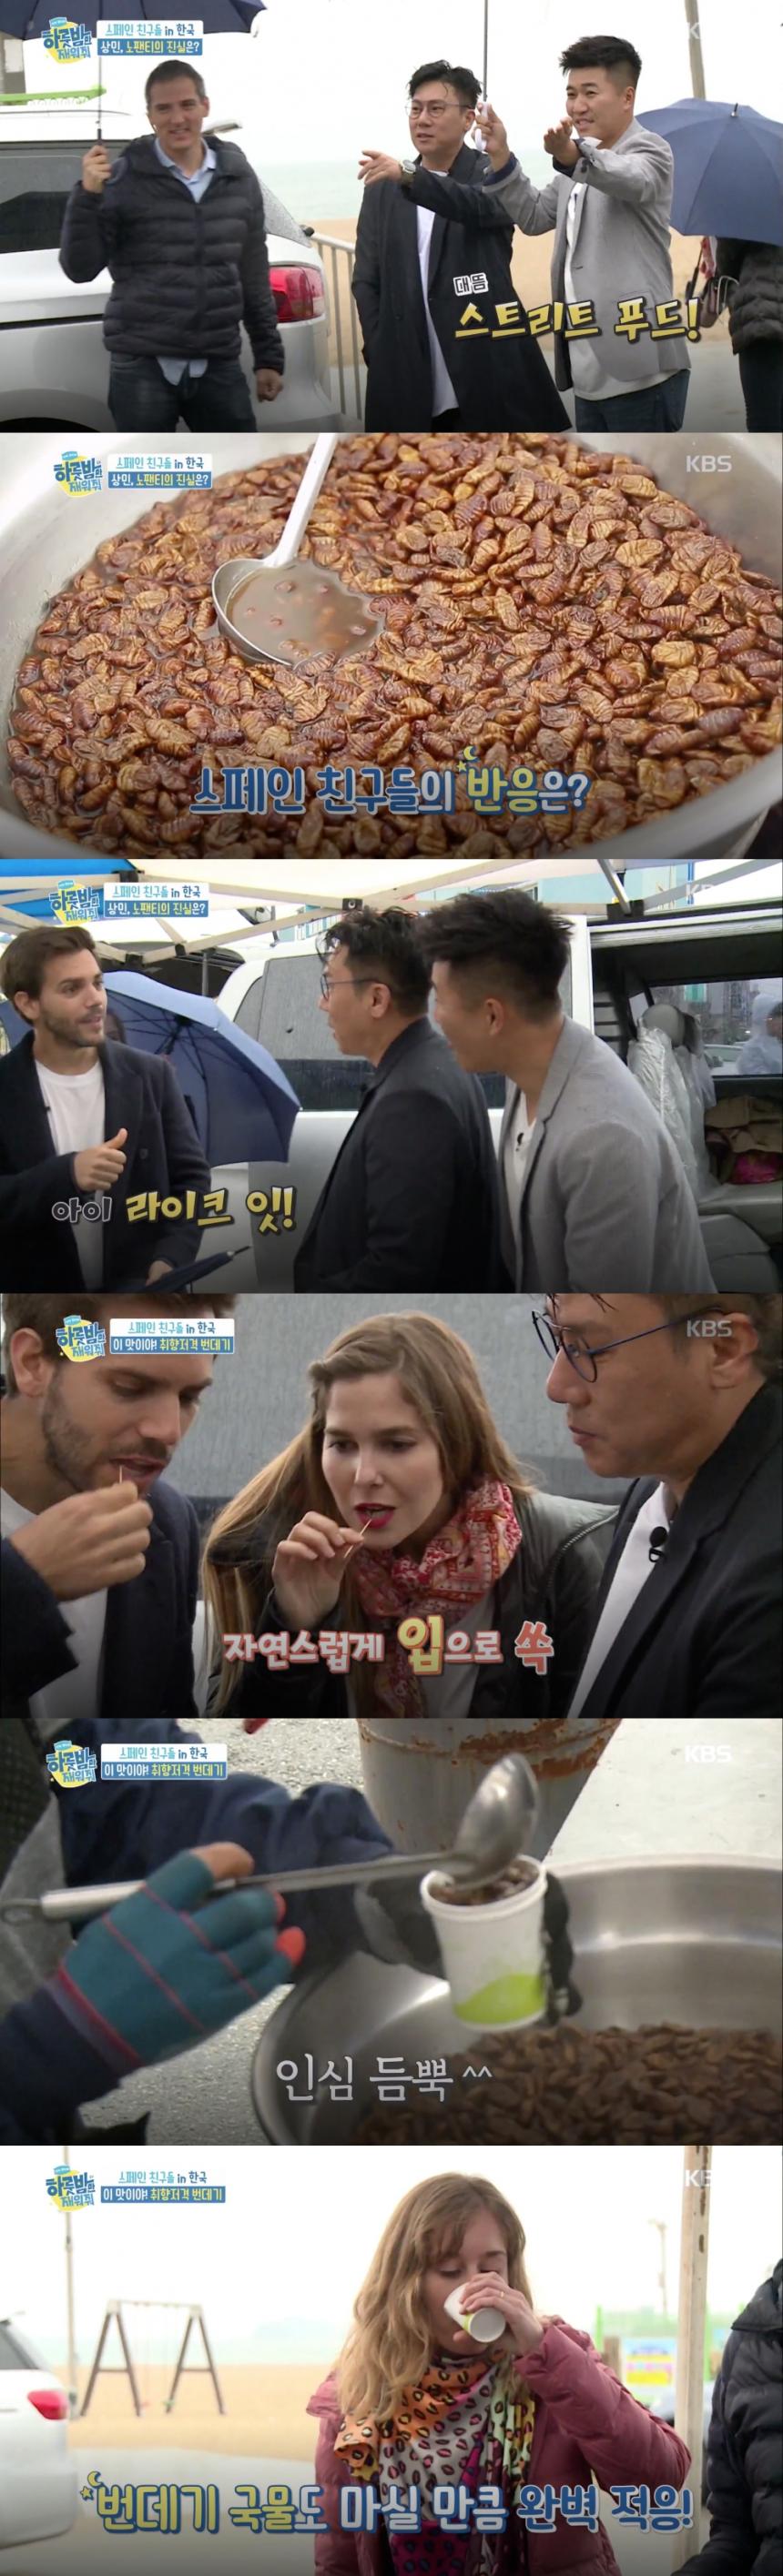 번데기 / KBS2 ‘하룻밤만 재워줘’ 방송 캡처